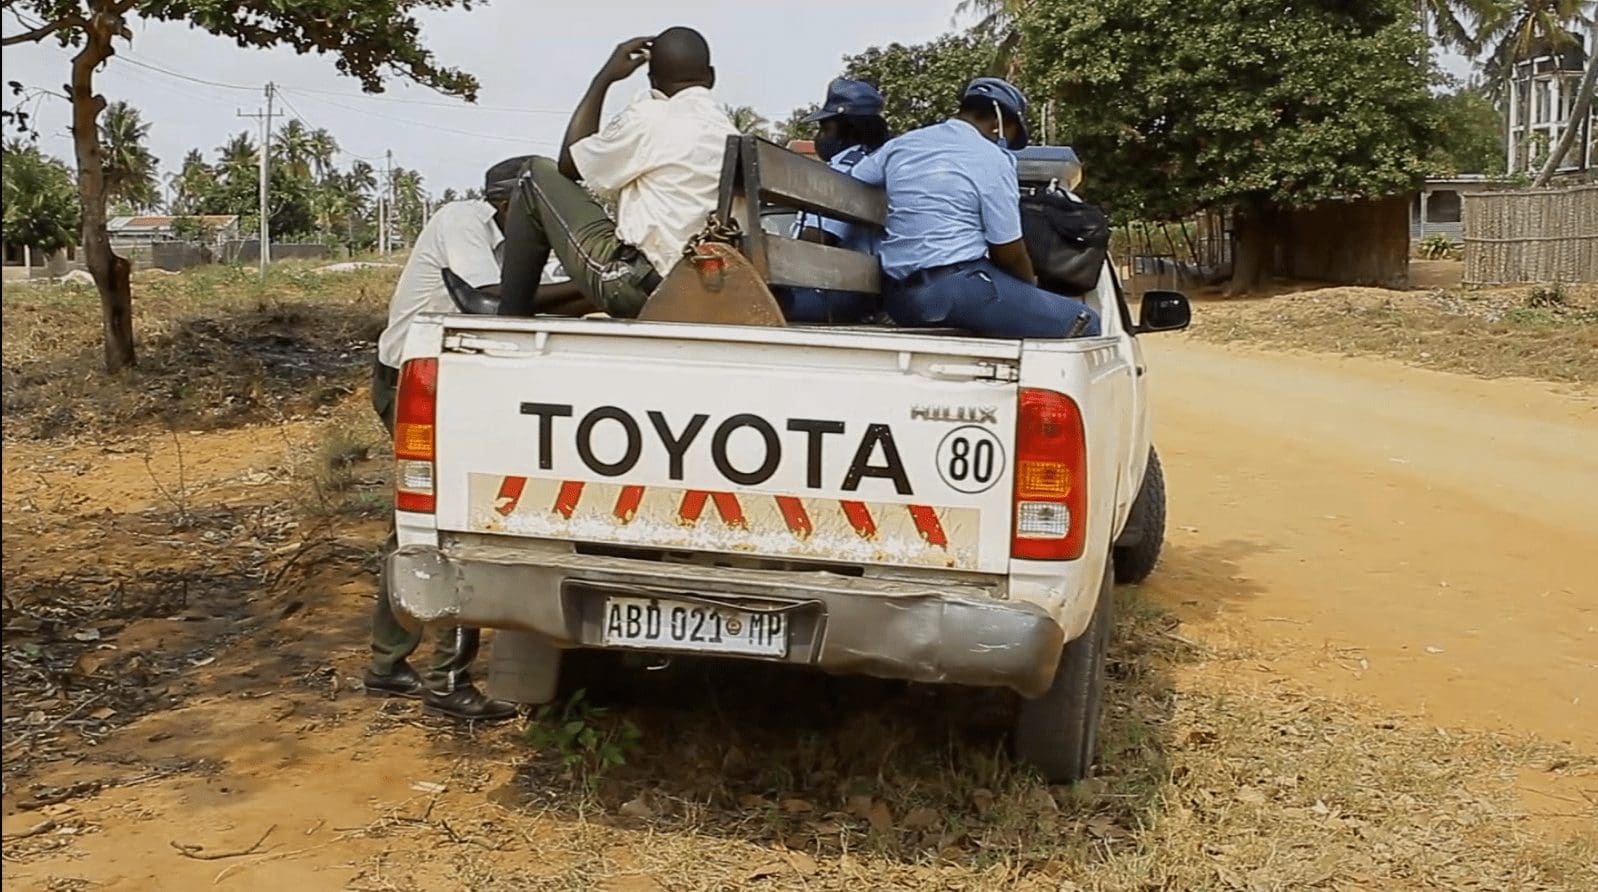 Justiça ordena detenção de três agentes da polícia, por extorquir 50 mil a um cidadão na via pública em Inhambane